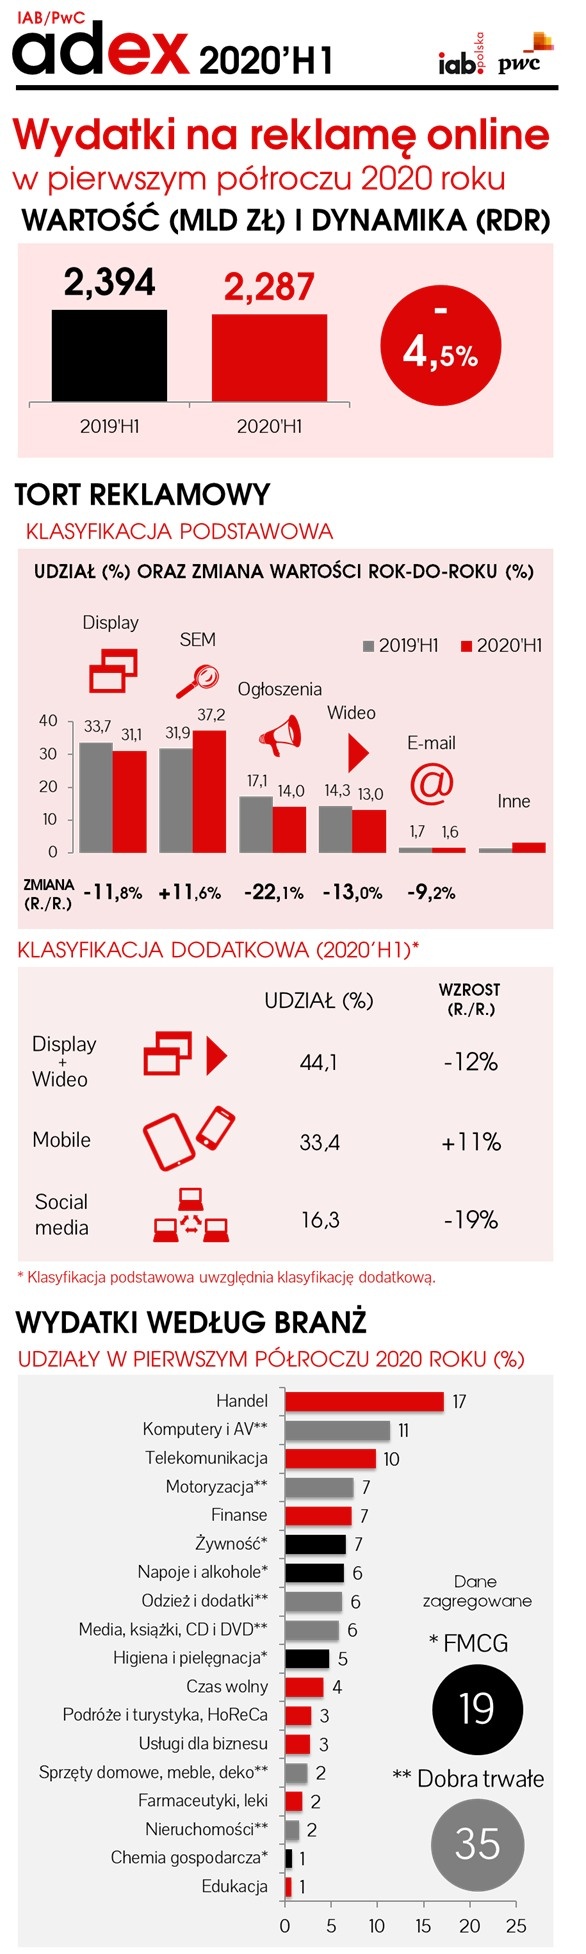 wydatki reklamowe 1H 2020, fot. IAB Polska/PwC AdEx